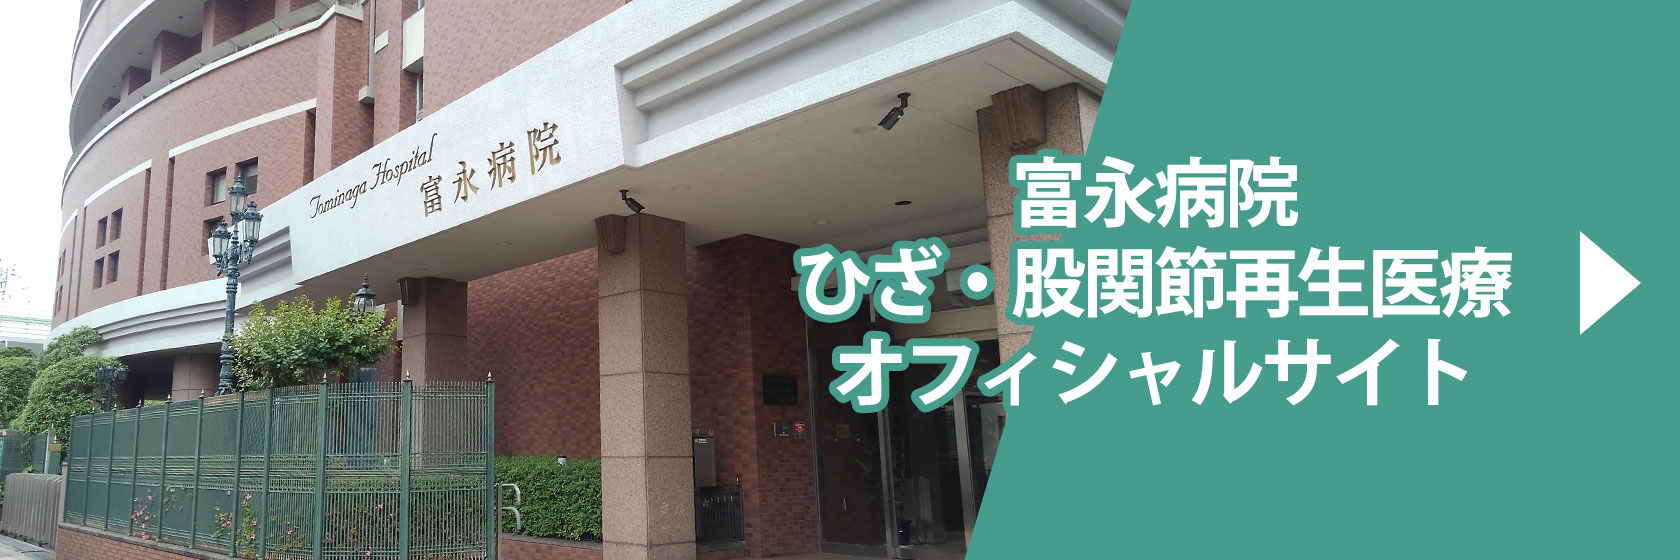 富永病院ひざ・股関節再生医療 オフィシャルサイト